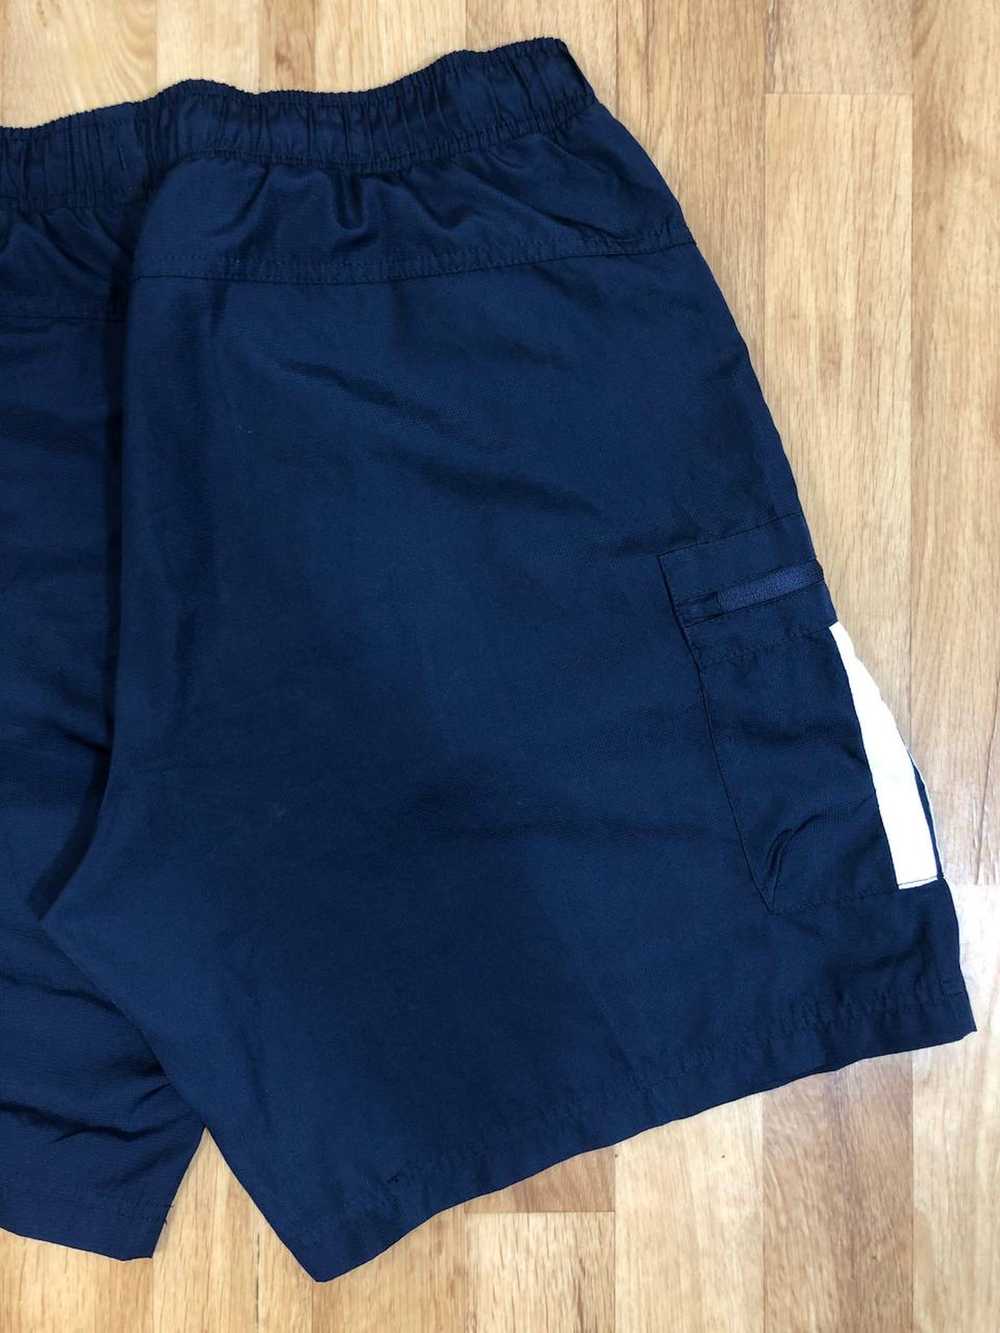 Streetwear × Tapout × Vintage Men’s Blue Shorts S… - image 7